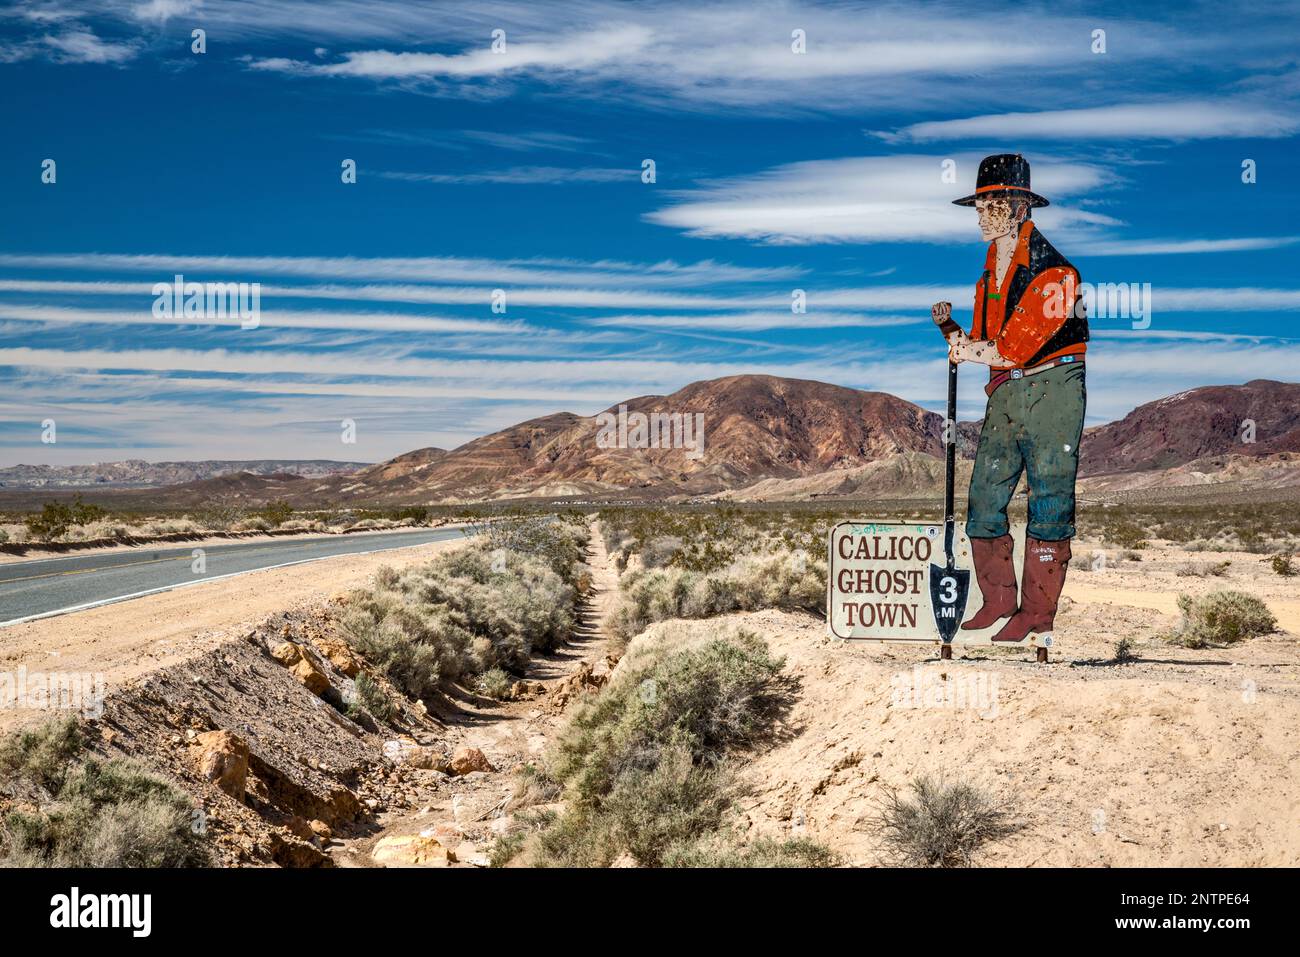 Figure pionnière, panneau criblé de trous de balle, sur la route de la ville fantôme de Calico, près de Barstow, désert de Mojave, Californie, États-Unis Banque D'Images